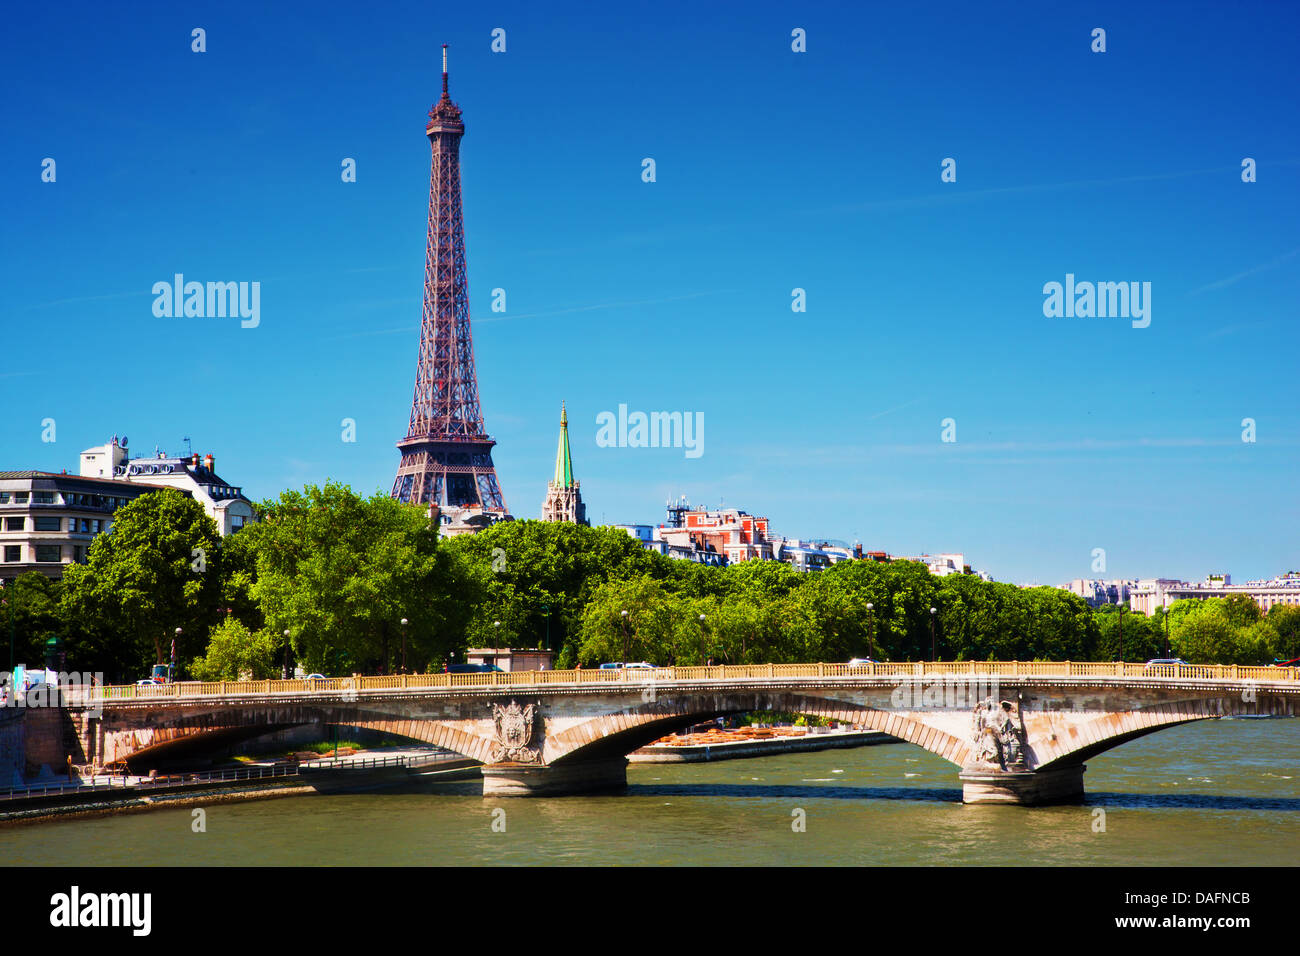 La Tour Eiffel et Pont Des invalides pont sur la Seine à Paris, France sur une journée ensoleillée Banque D'Images